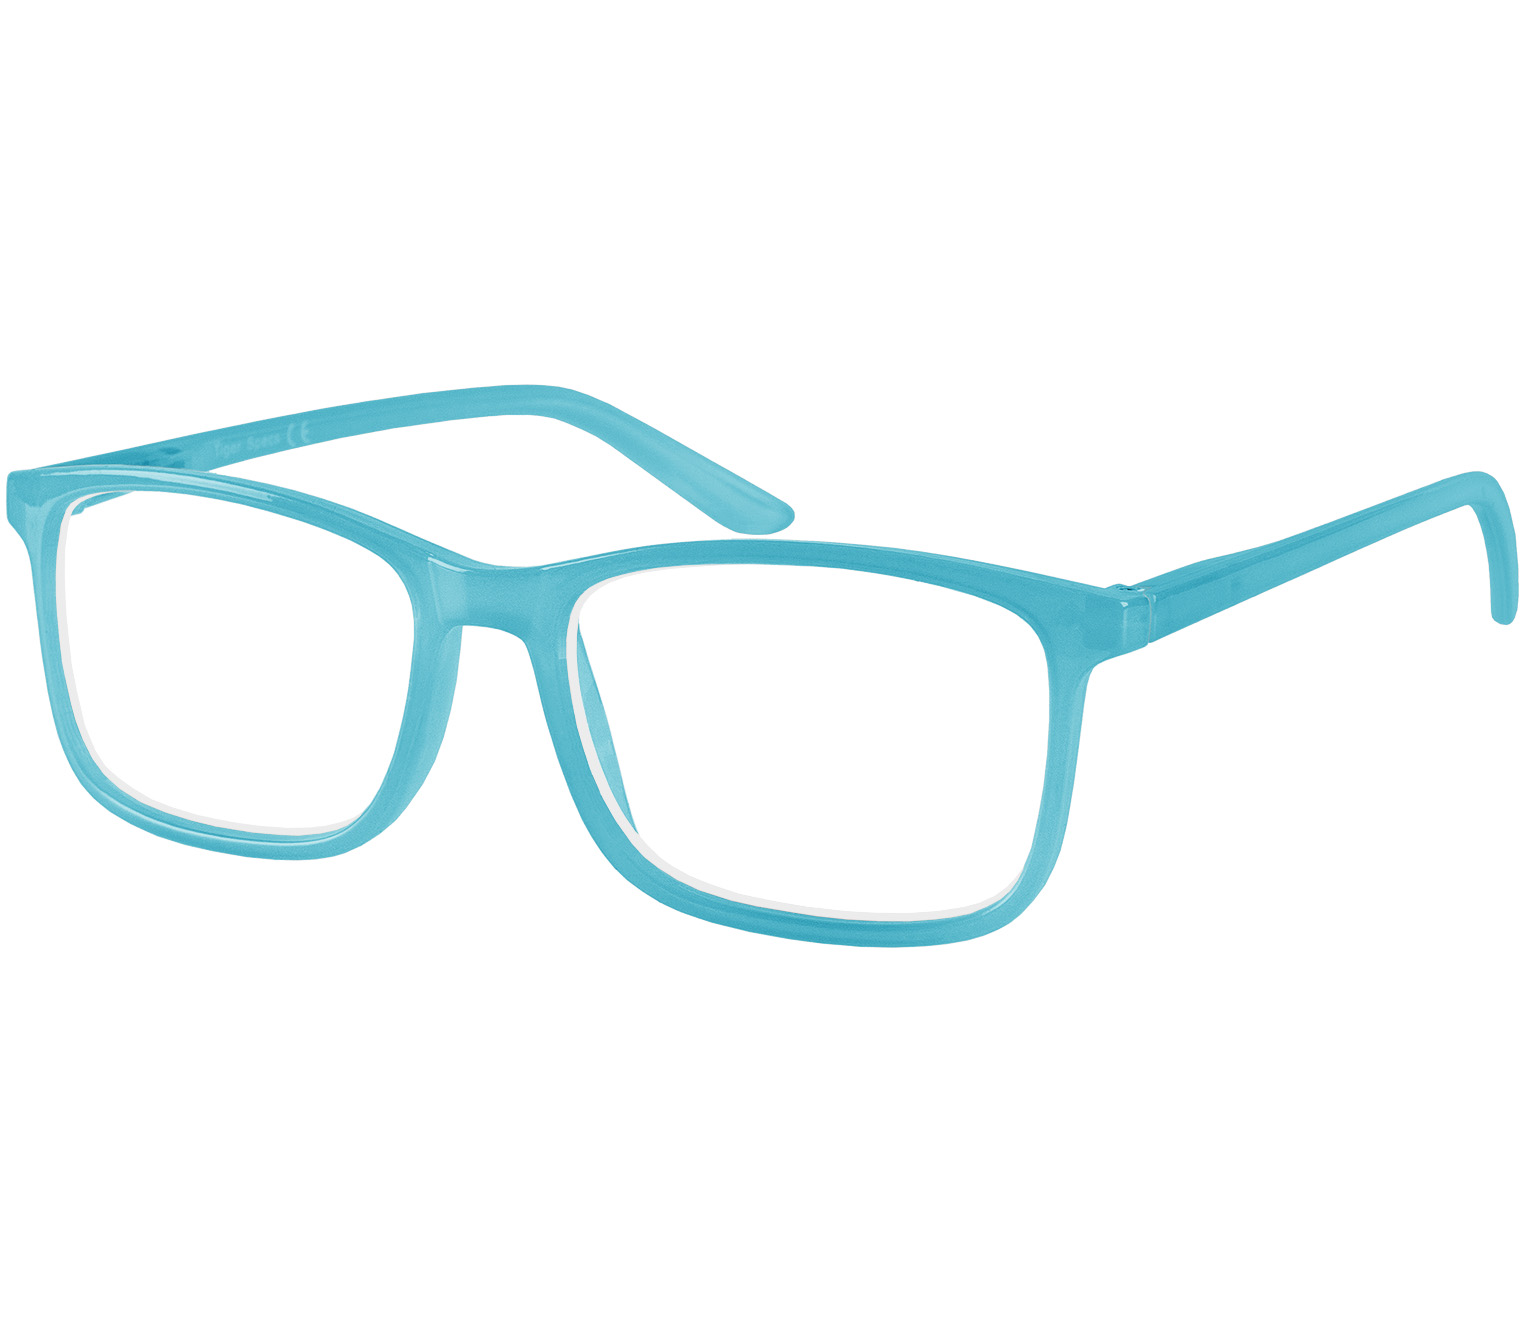 Main Image (Angle) - Sundae (Blue) Reading Glasses